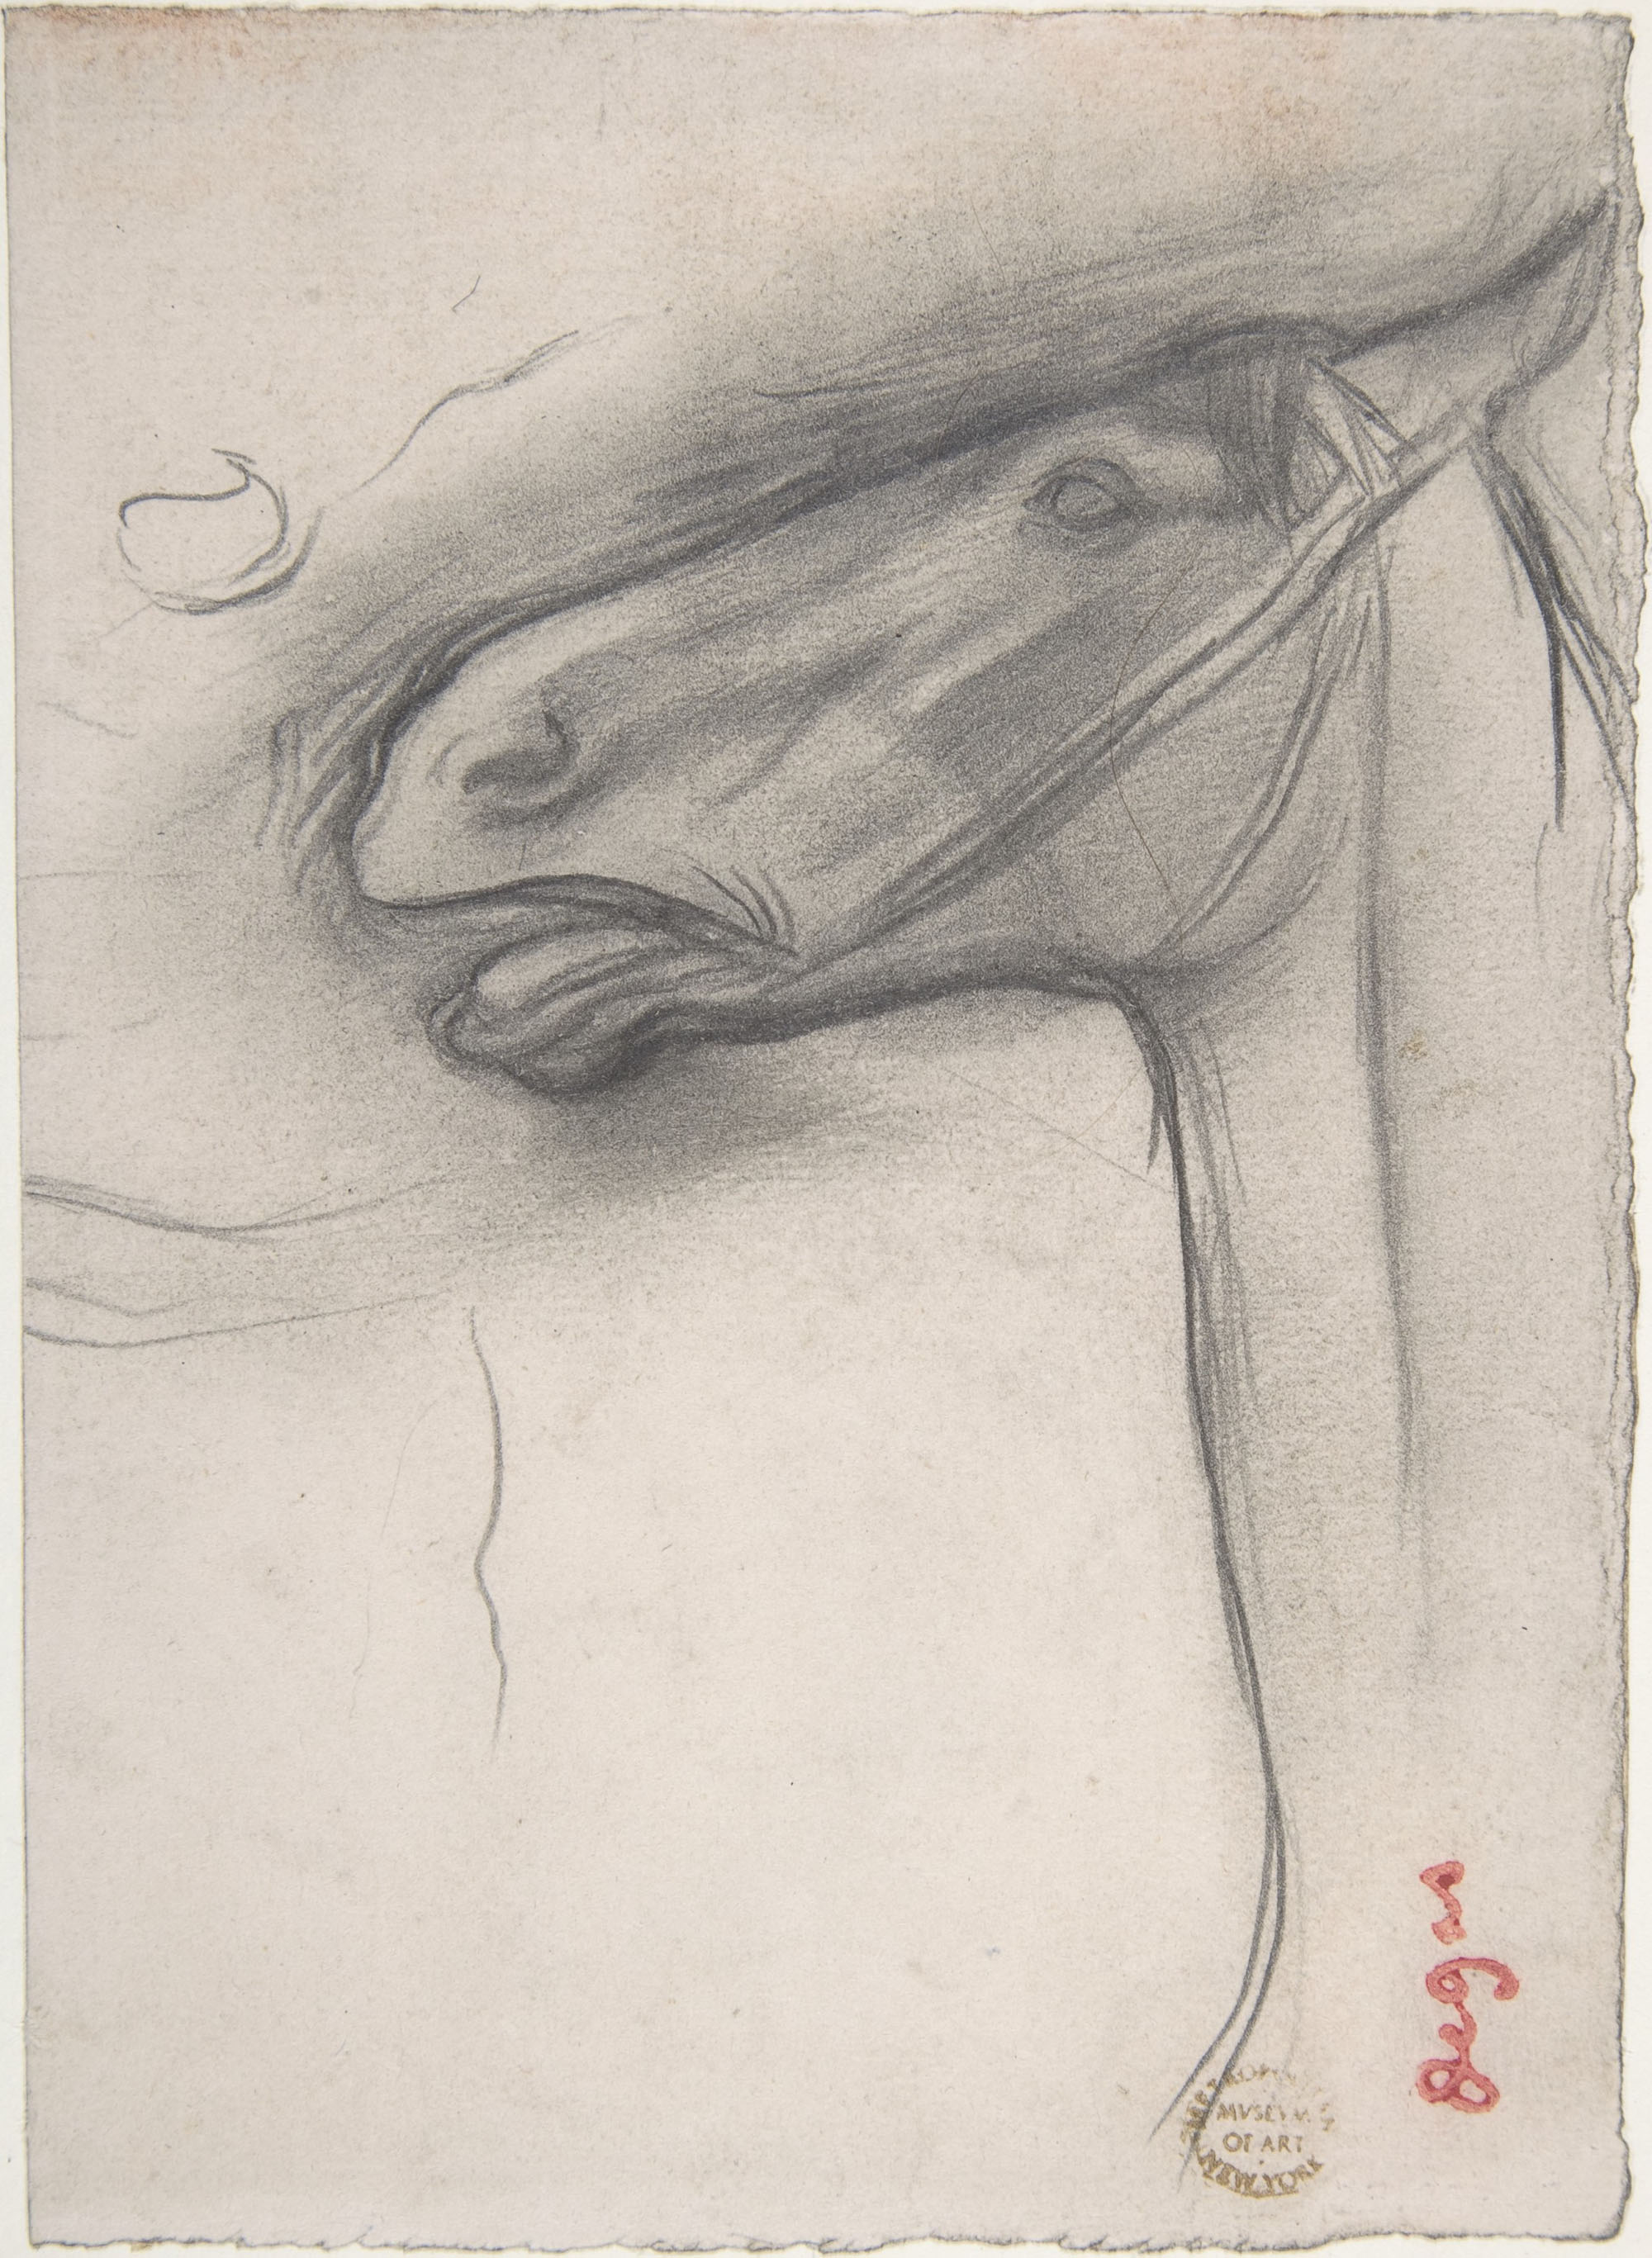 Эдгар Дега. "Голова лошади". Около 1878.